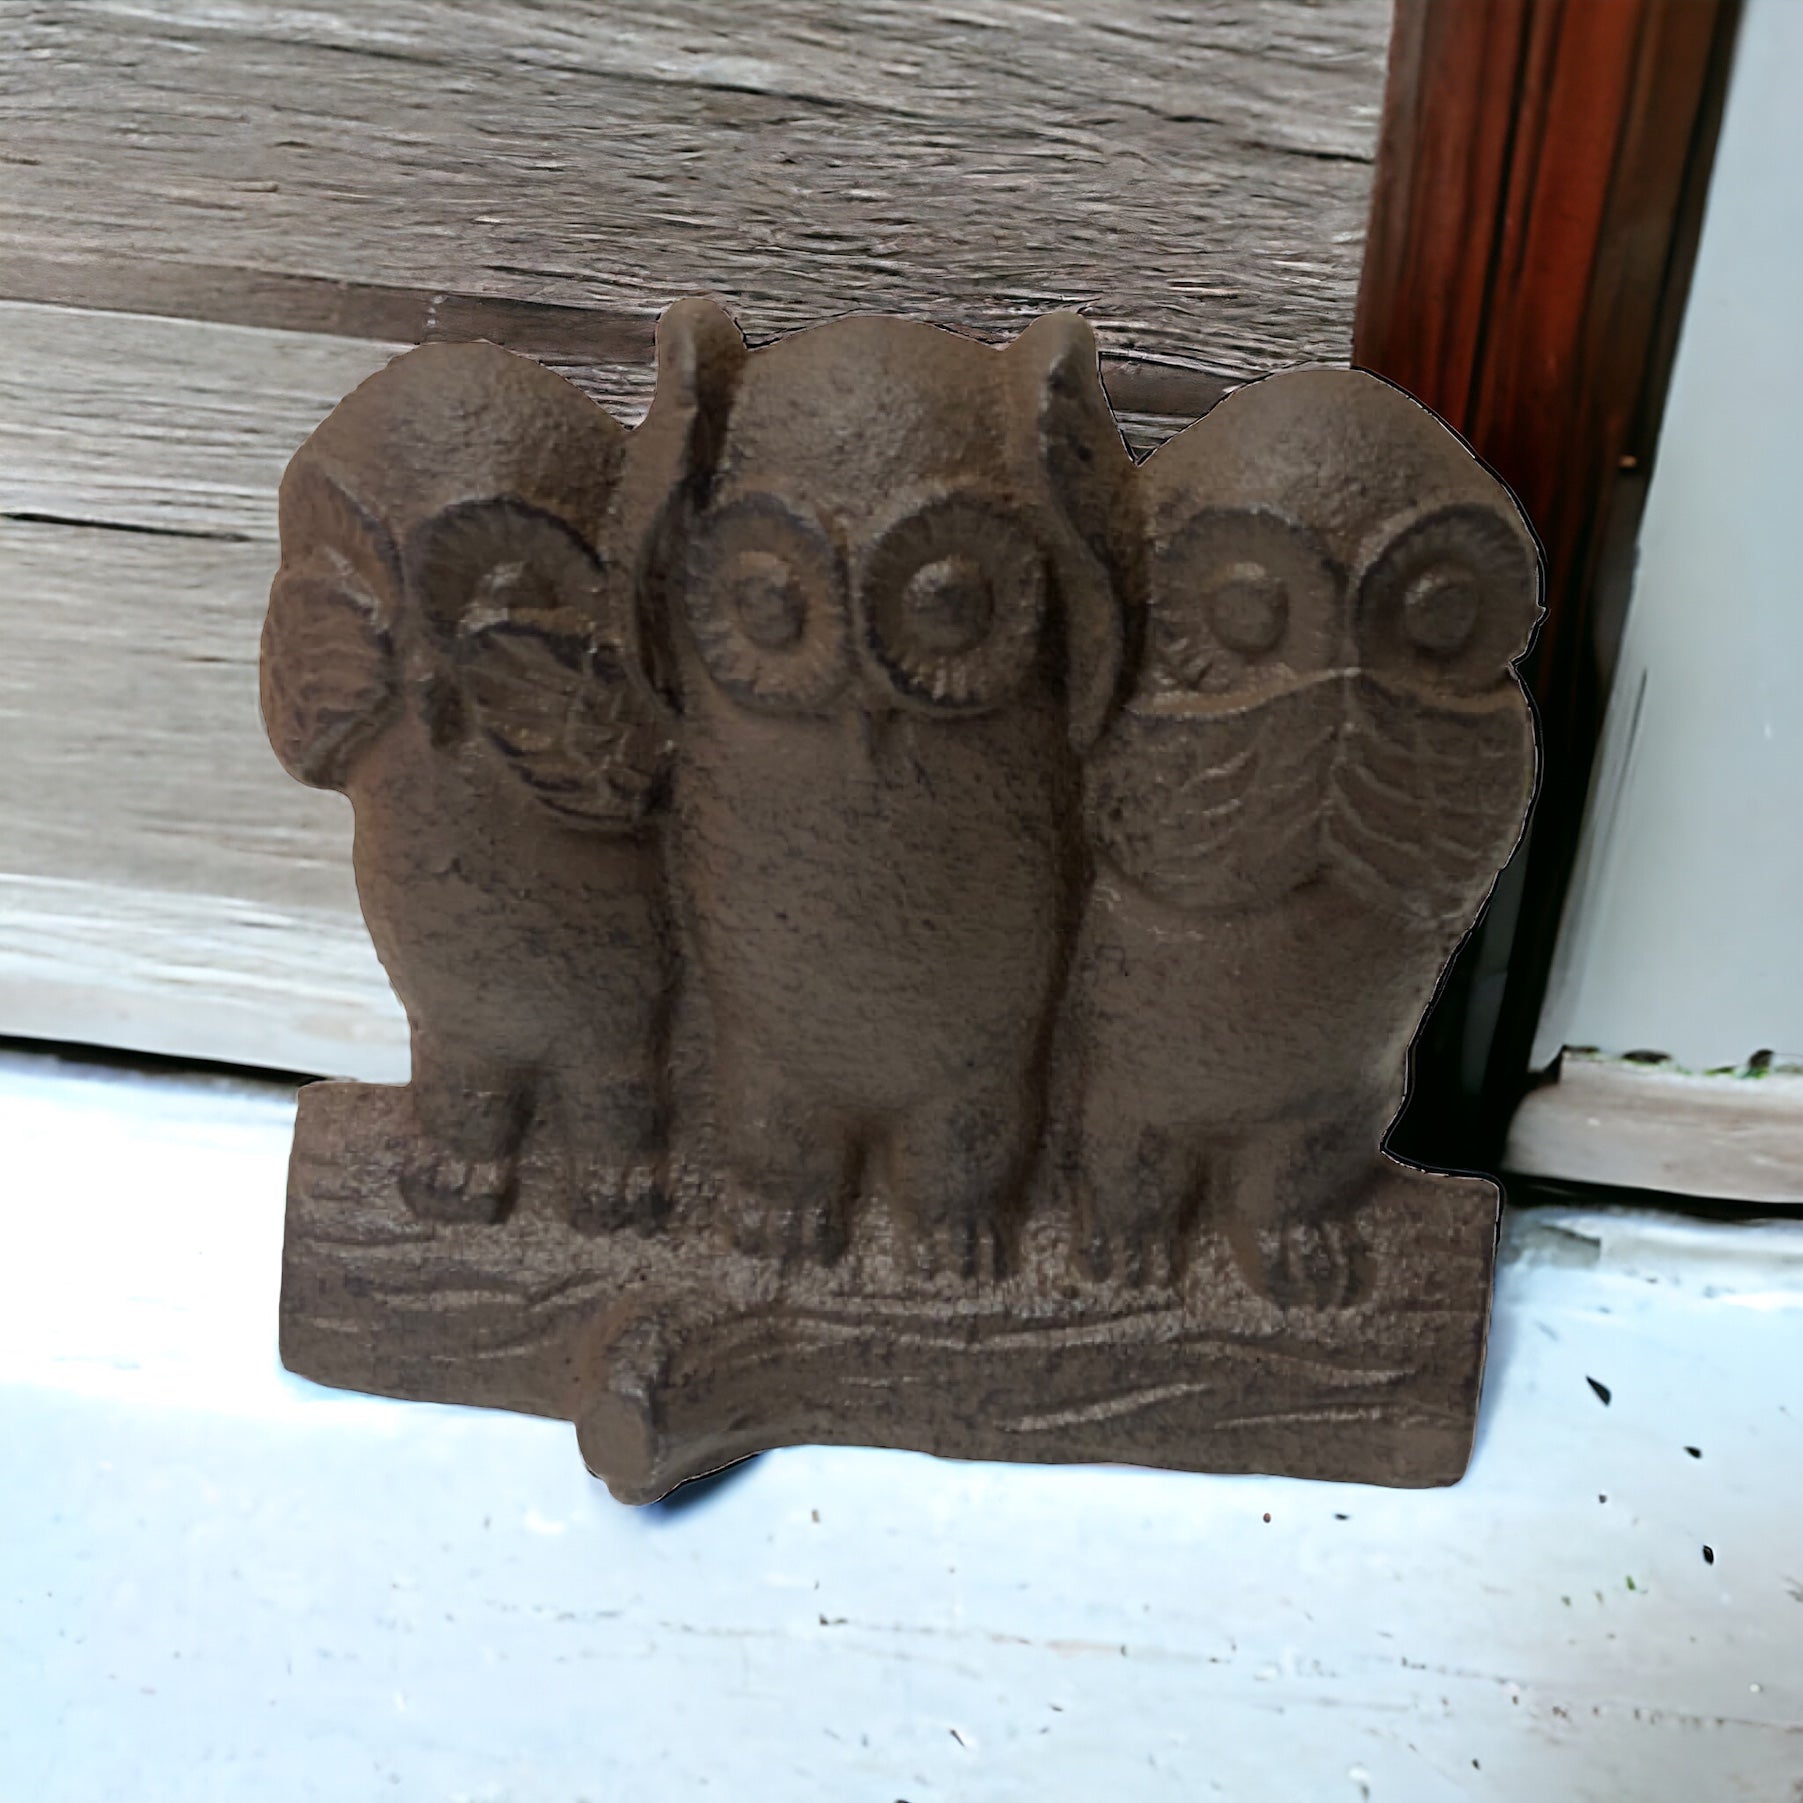 Owl Cast Iron Metal Door Stop Stopper Wedge - The Renmy Store Homewares & Gifts 